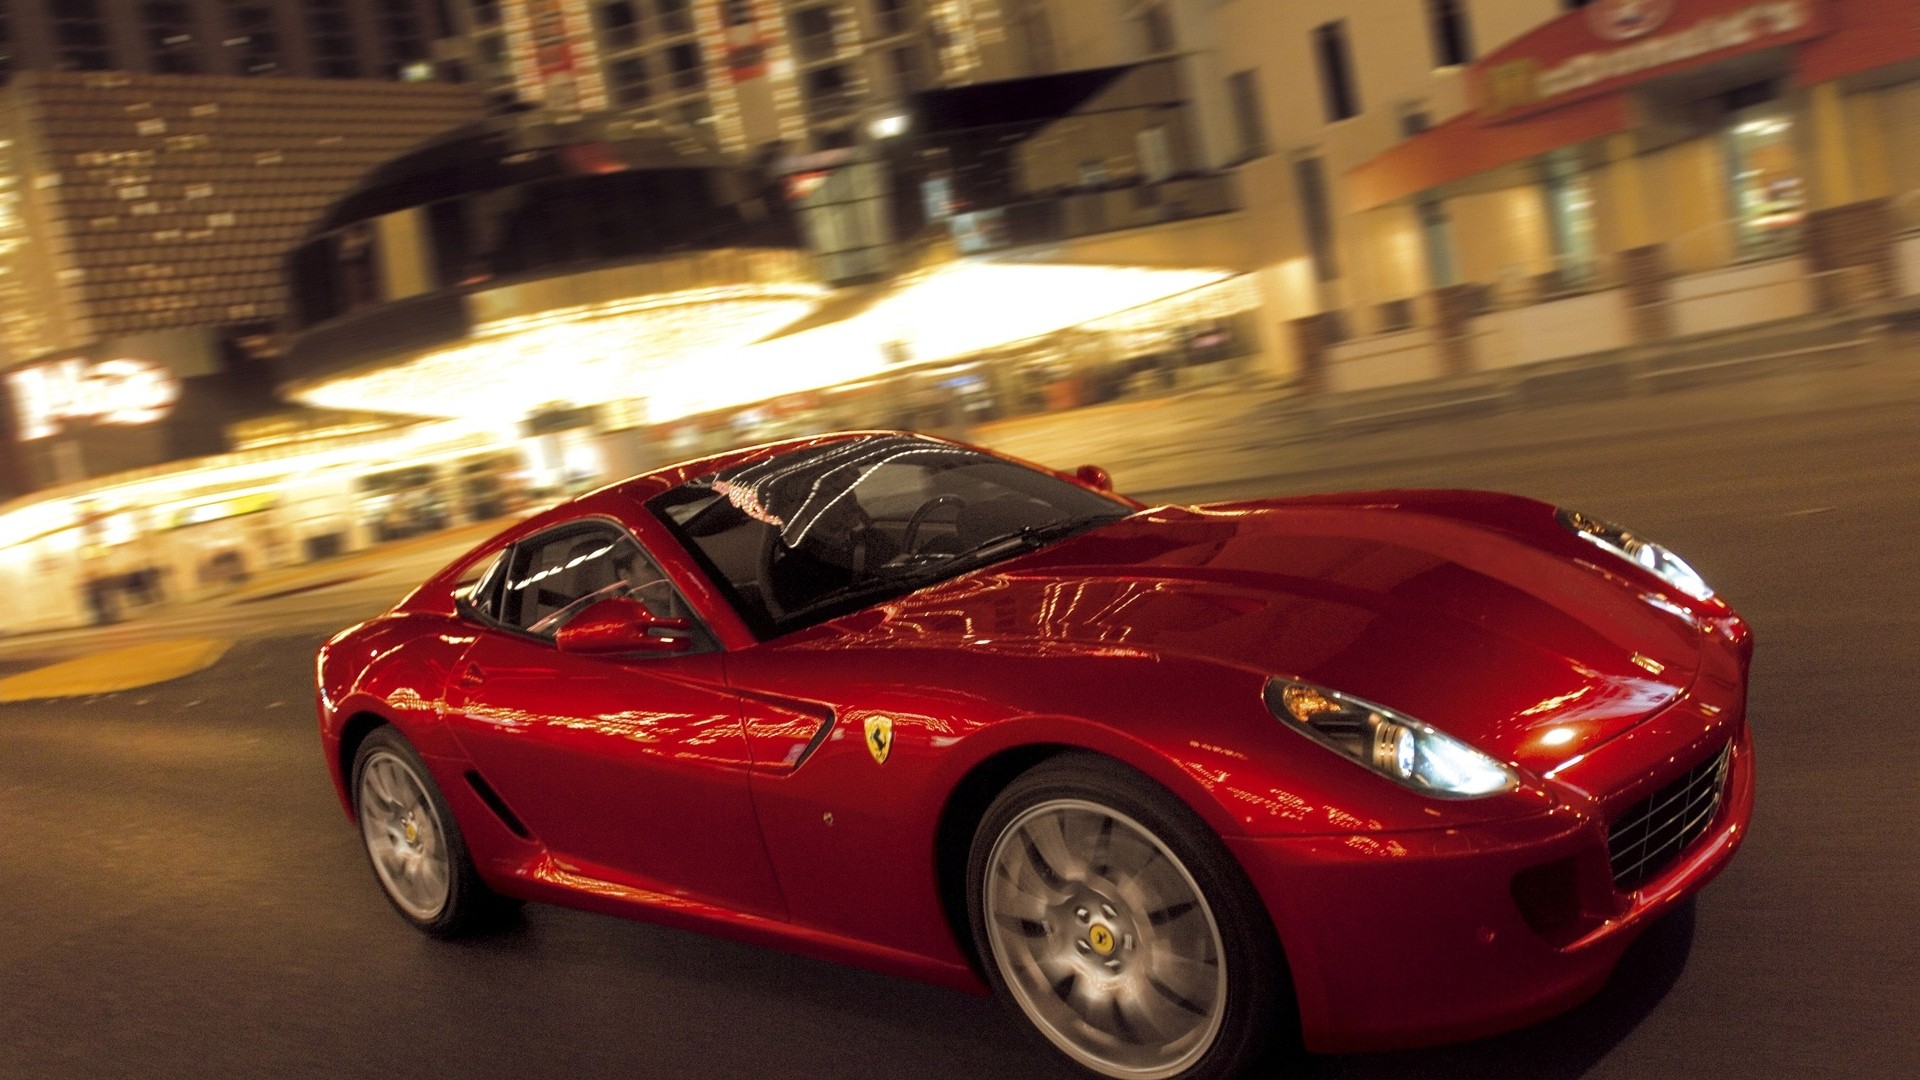 улицы, красный цвет, автомобили, Феррари, транспортные средства, Ferrari 599 GTB Fiorano - обои на рабочий стол